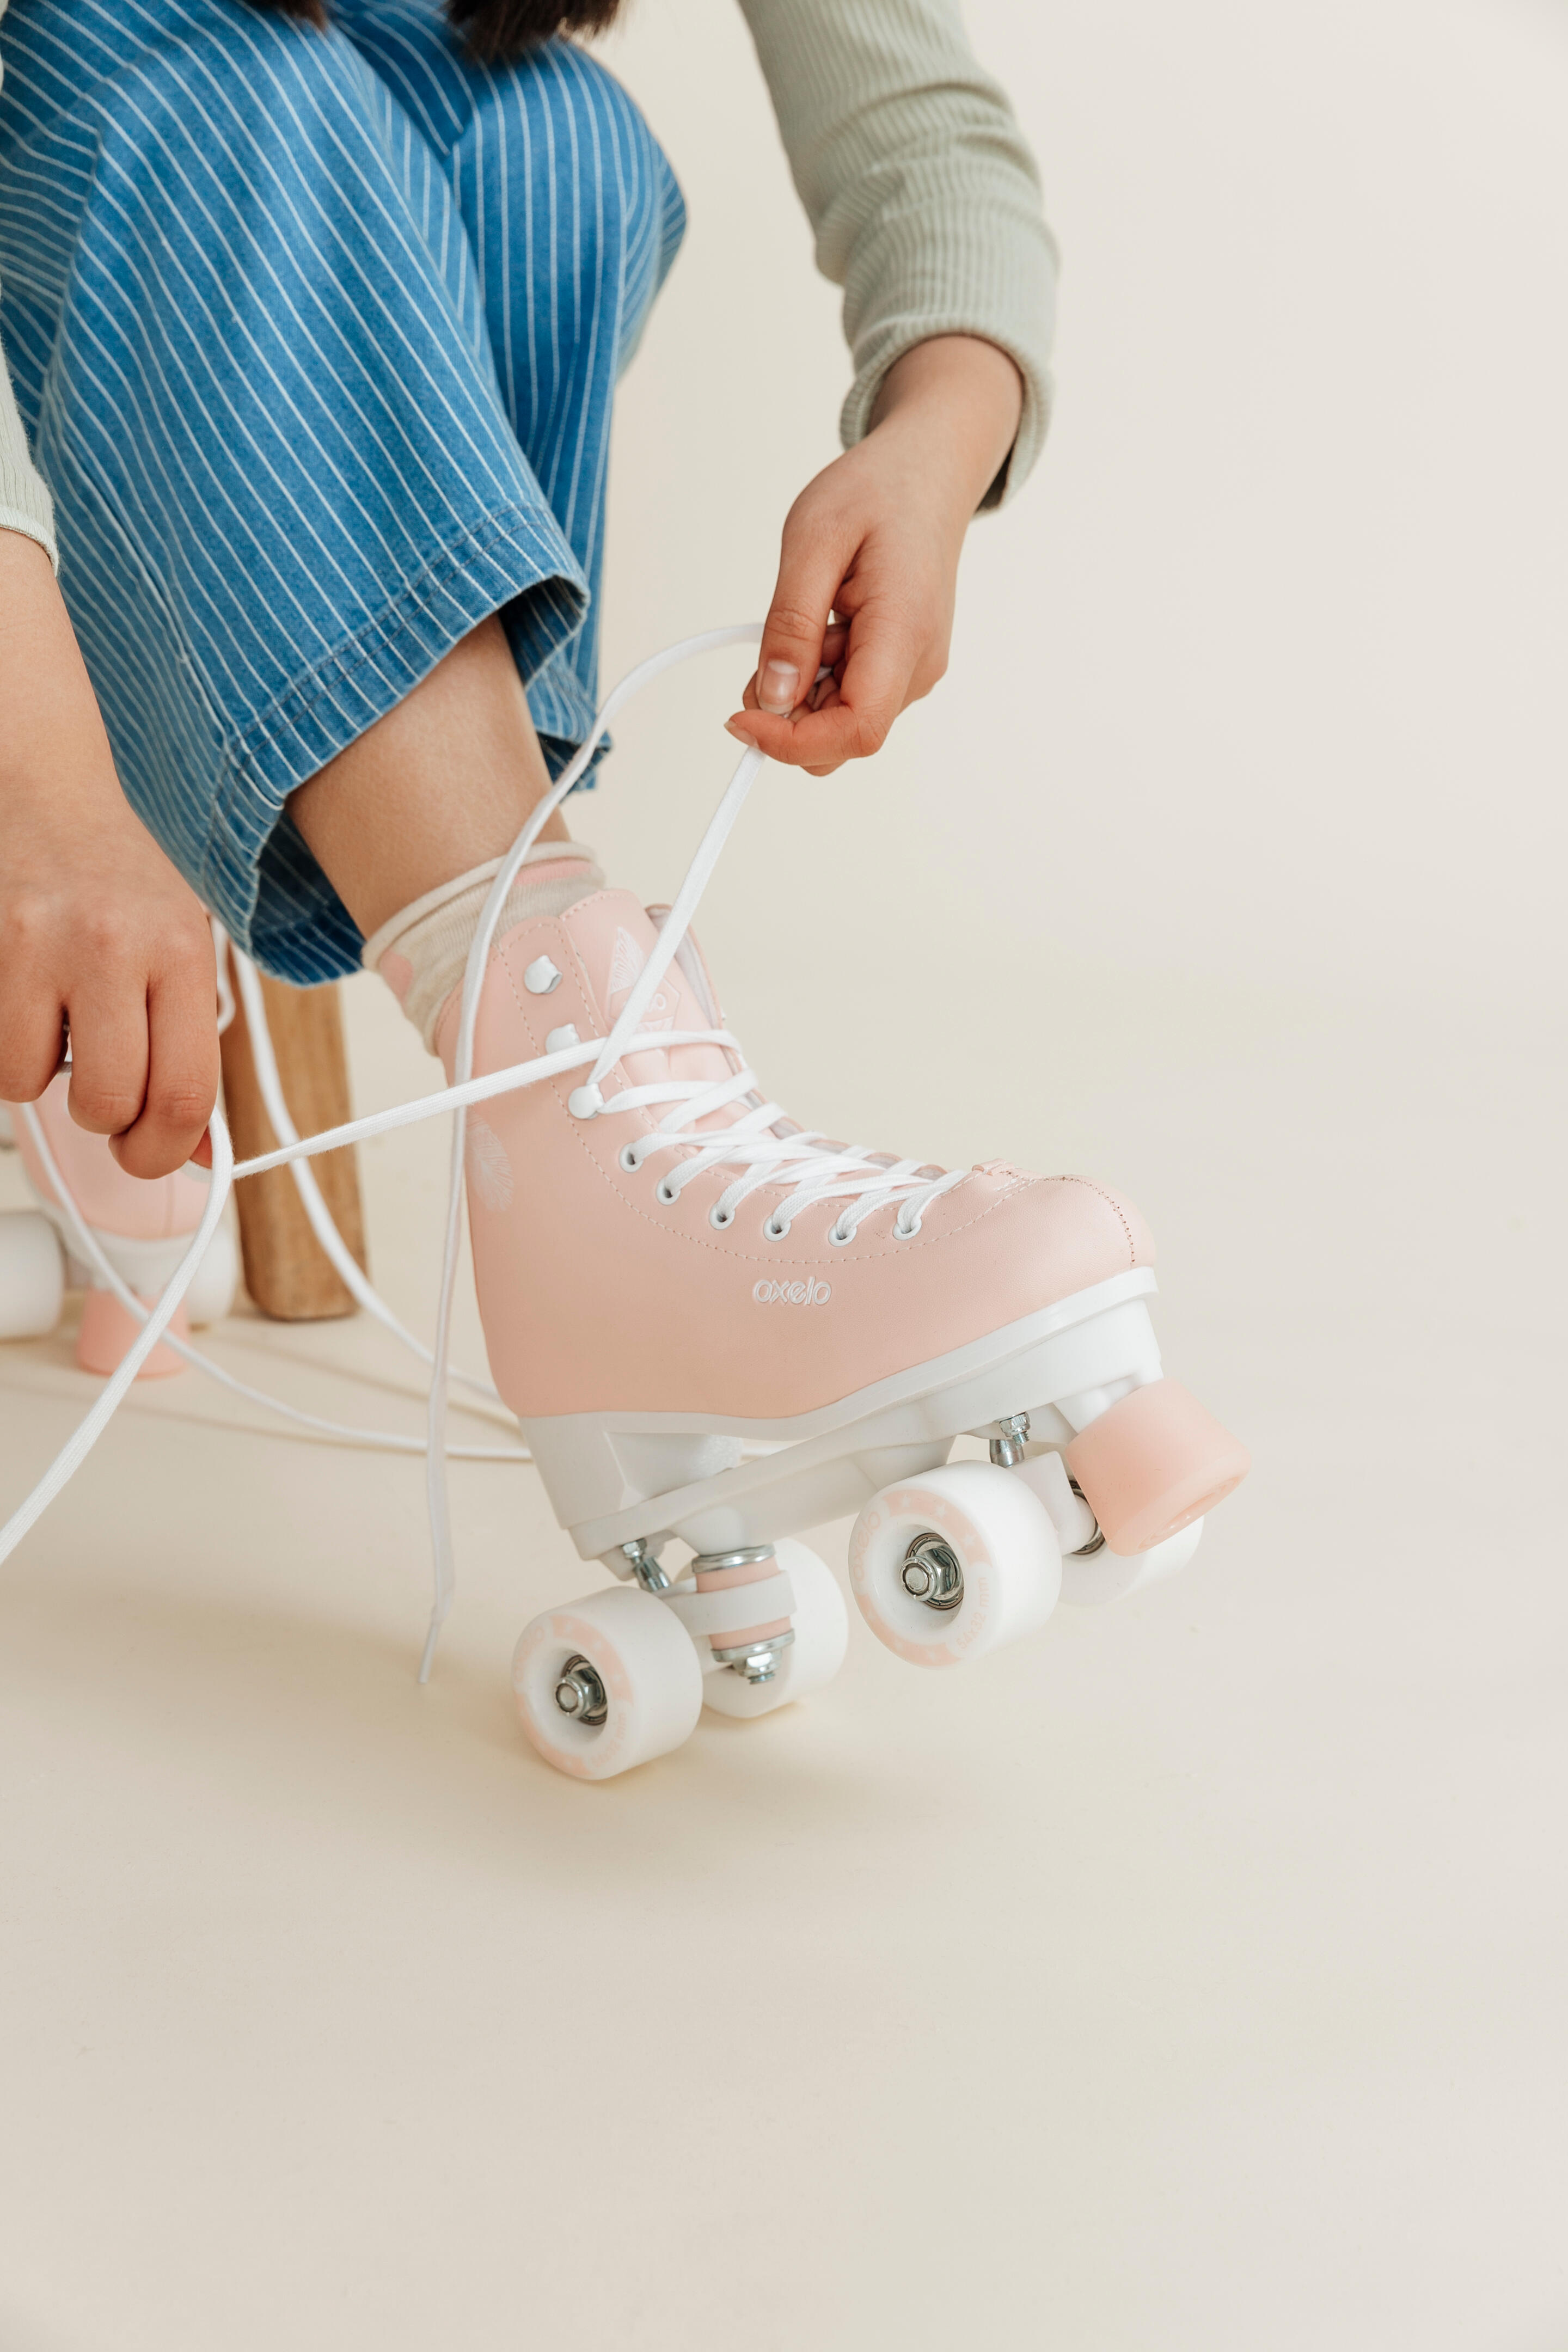 Kids' and Adult Artistic Roller Skating Quad Skates 100 - Pink 14/15